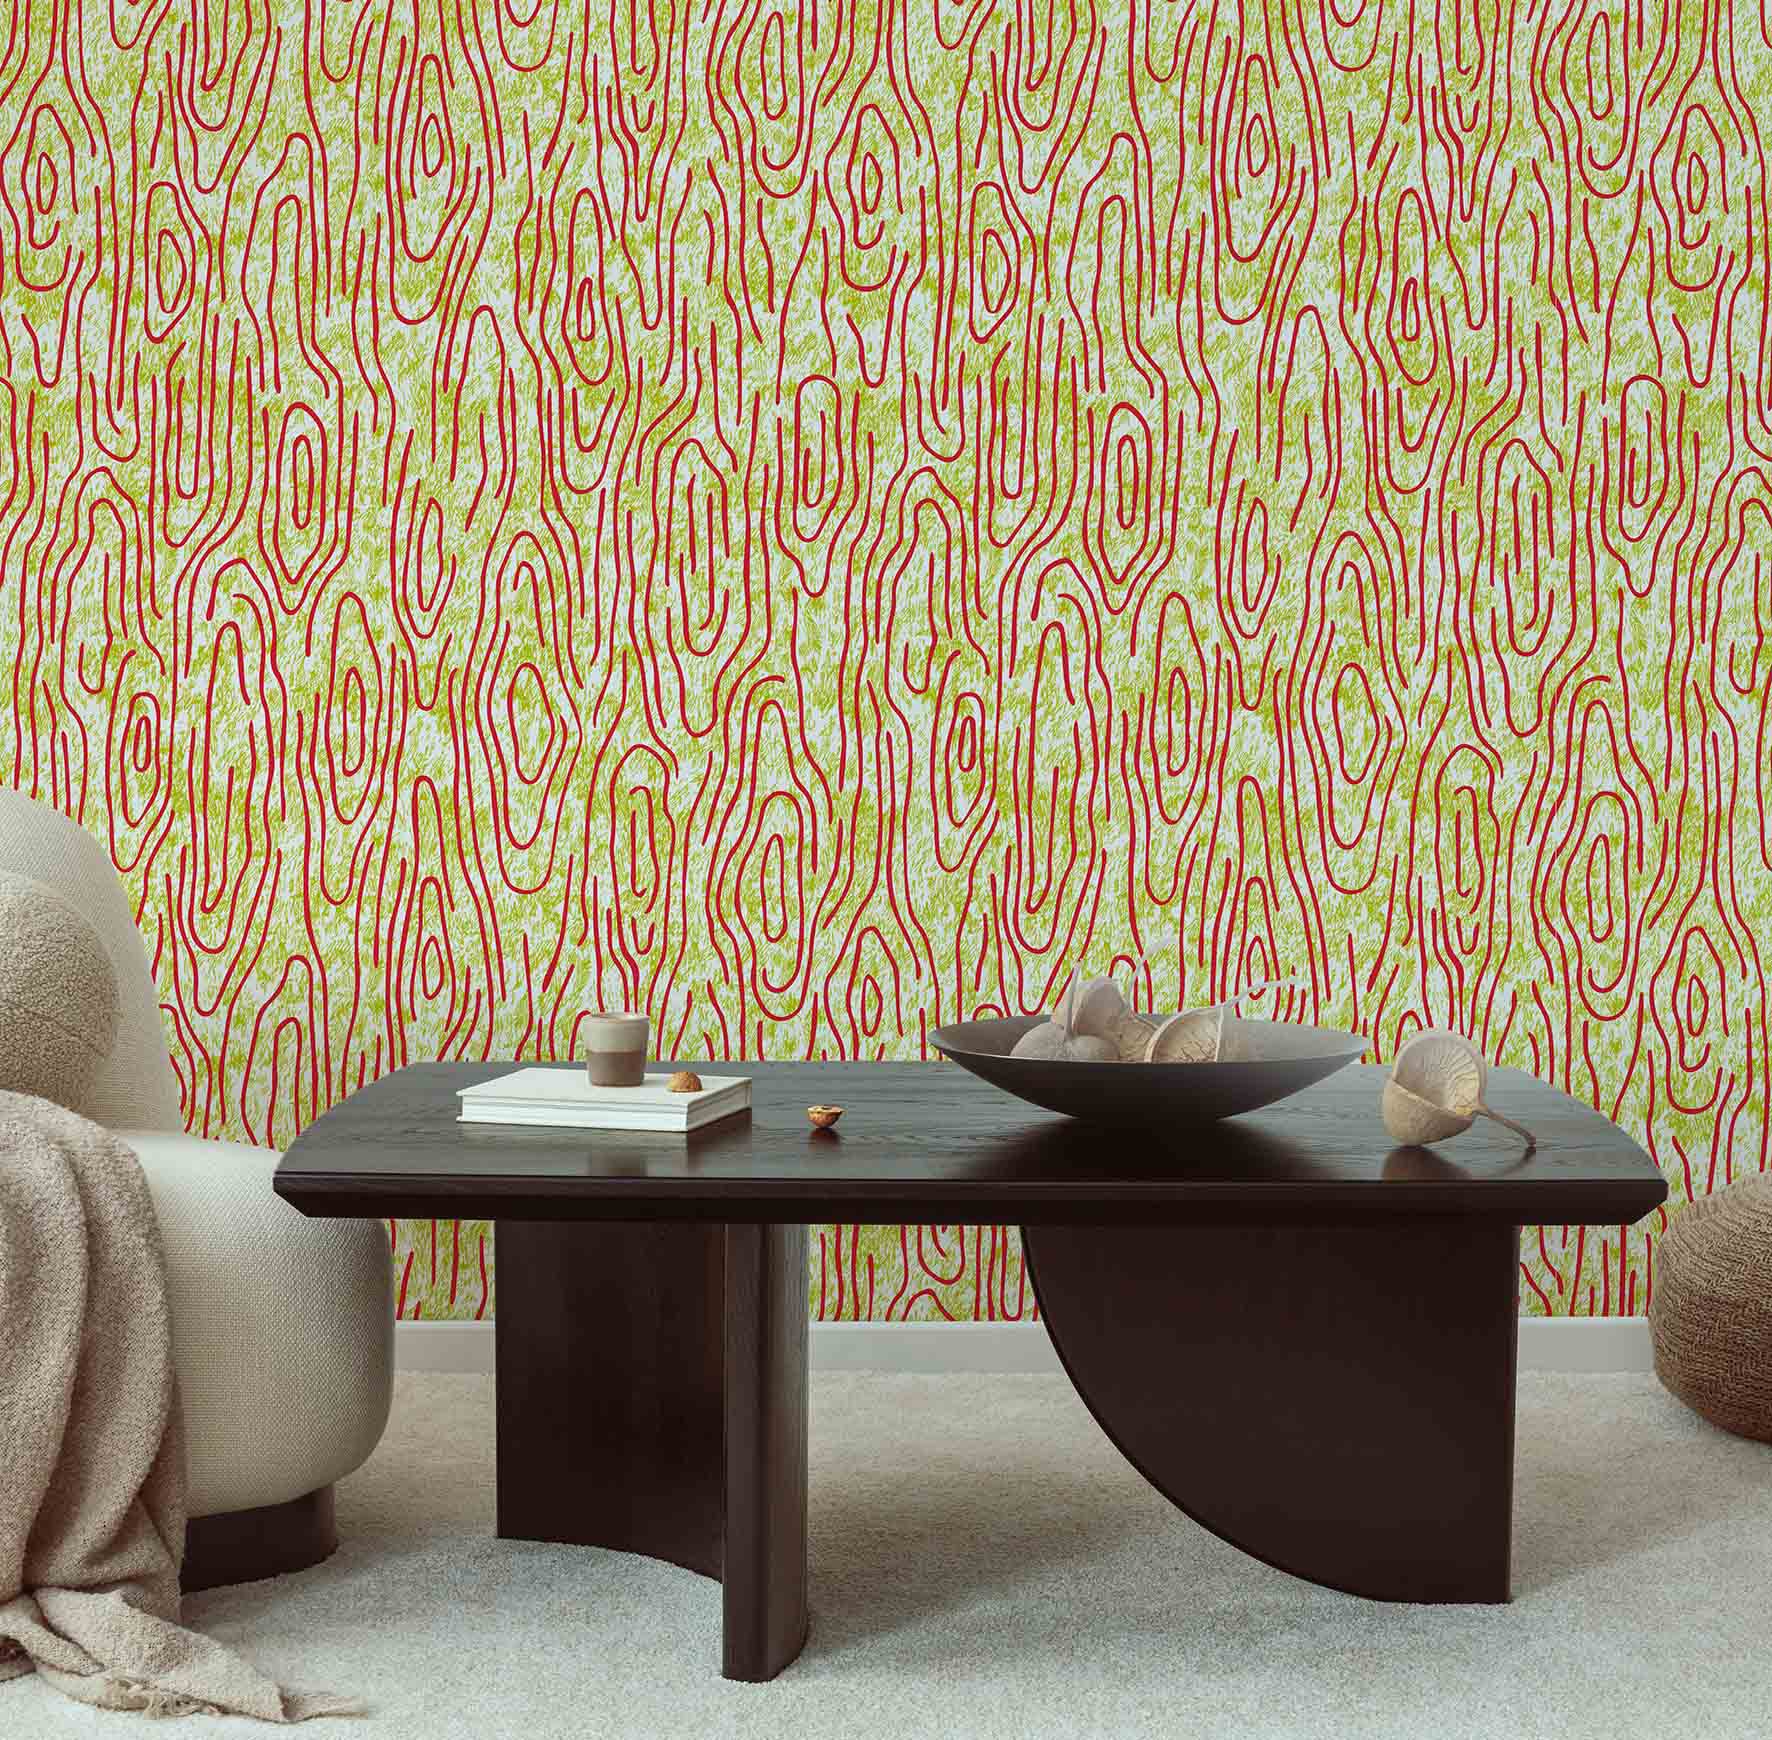 MaVoix-wallpaper-Vampa-incendio-by-Studio-Lievito-pattern-Collezione-Essenziali-bacl-couch-scaled